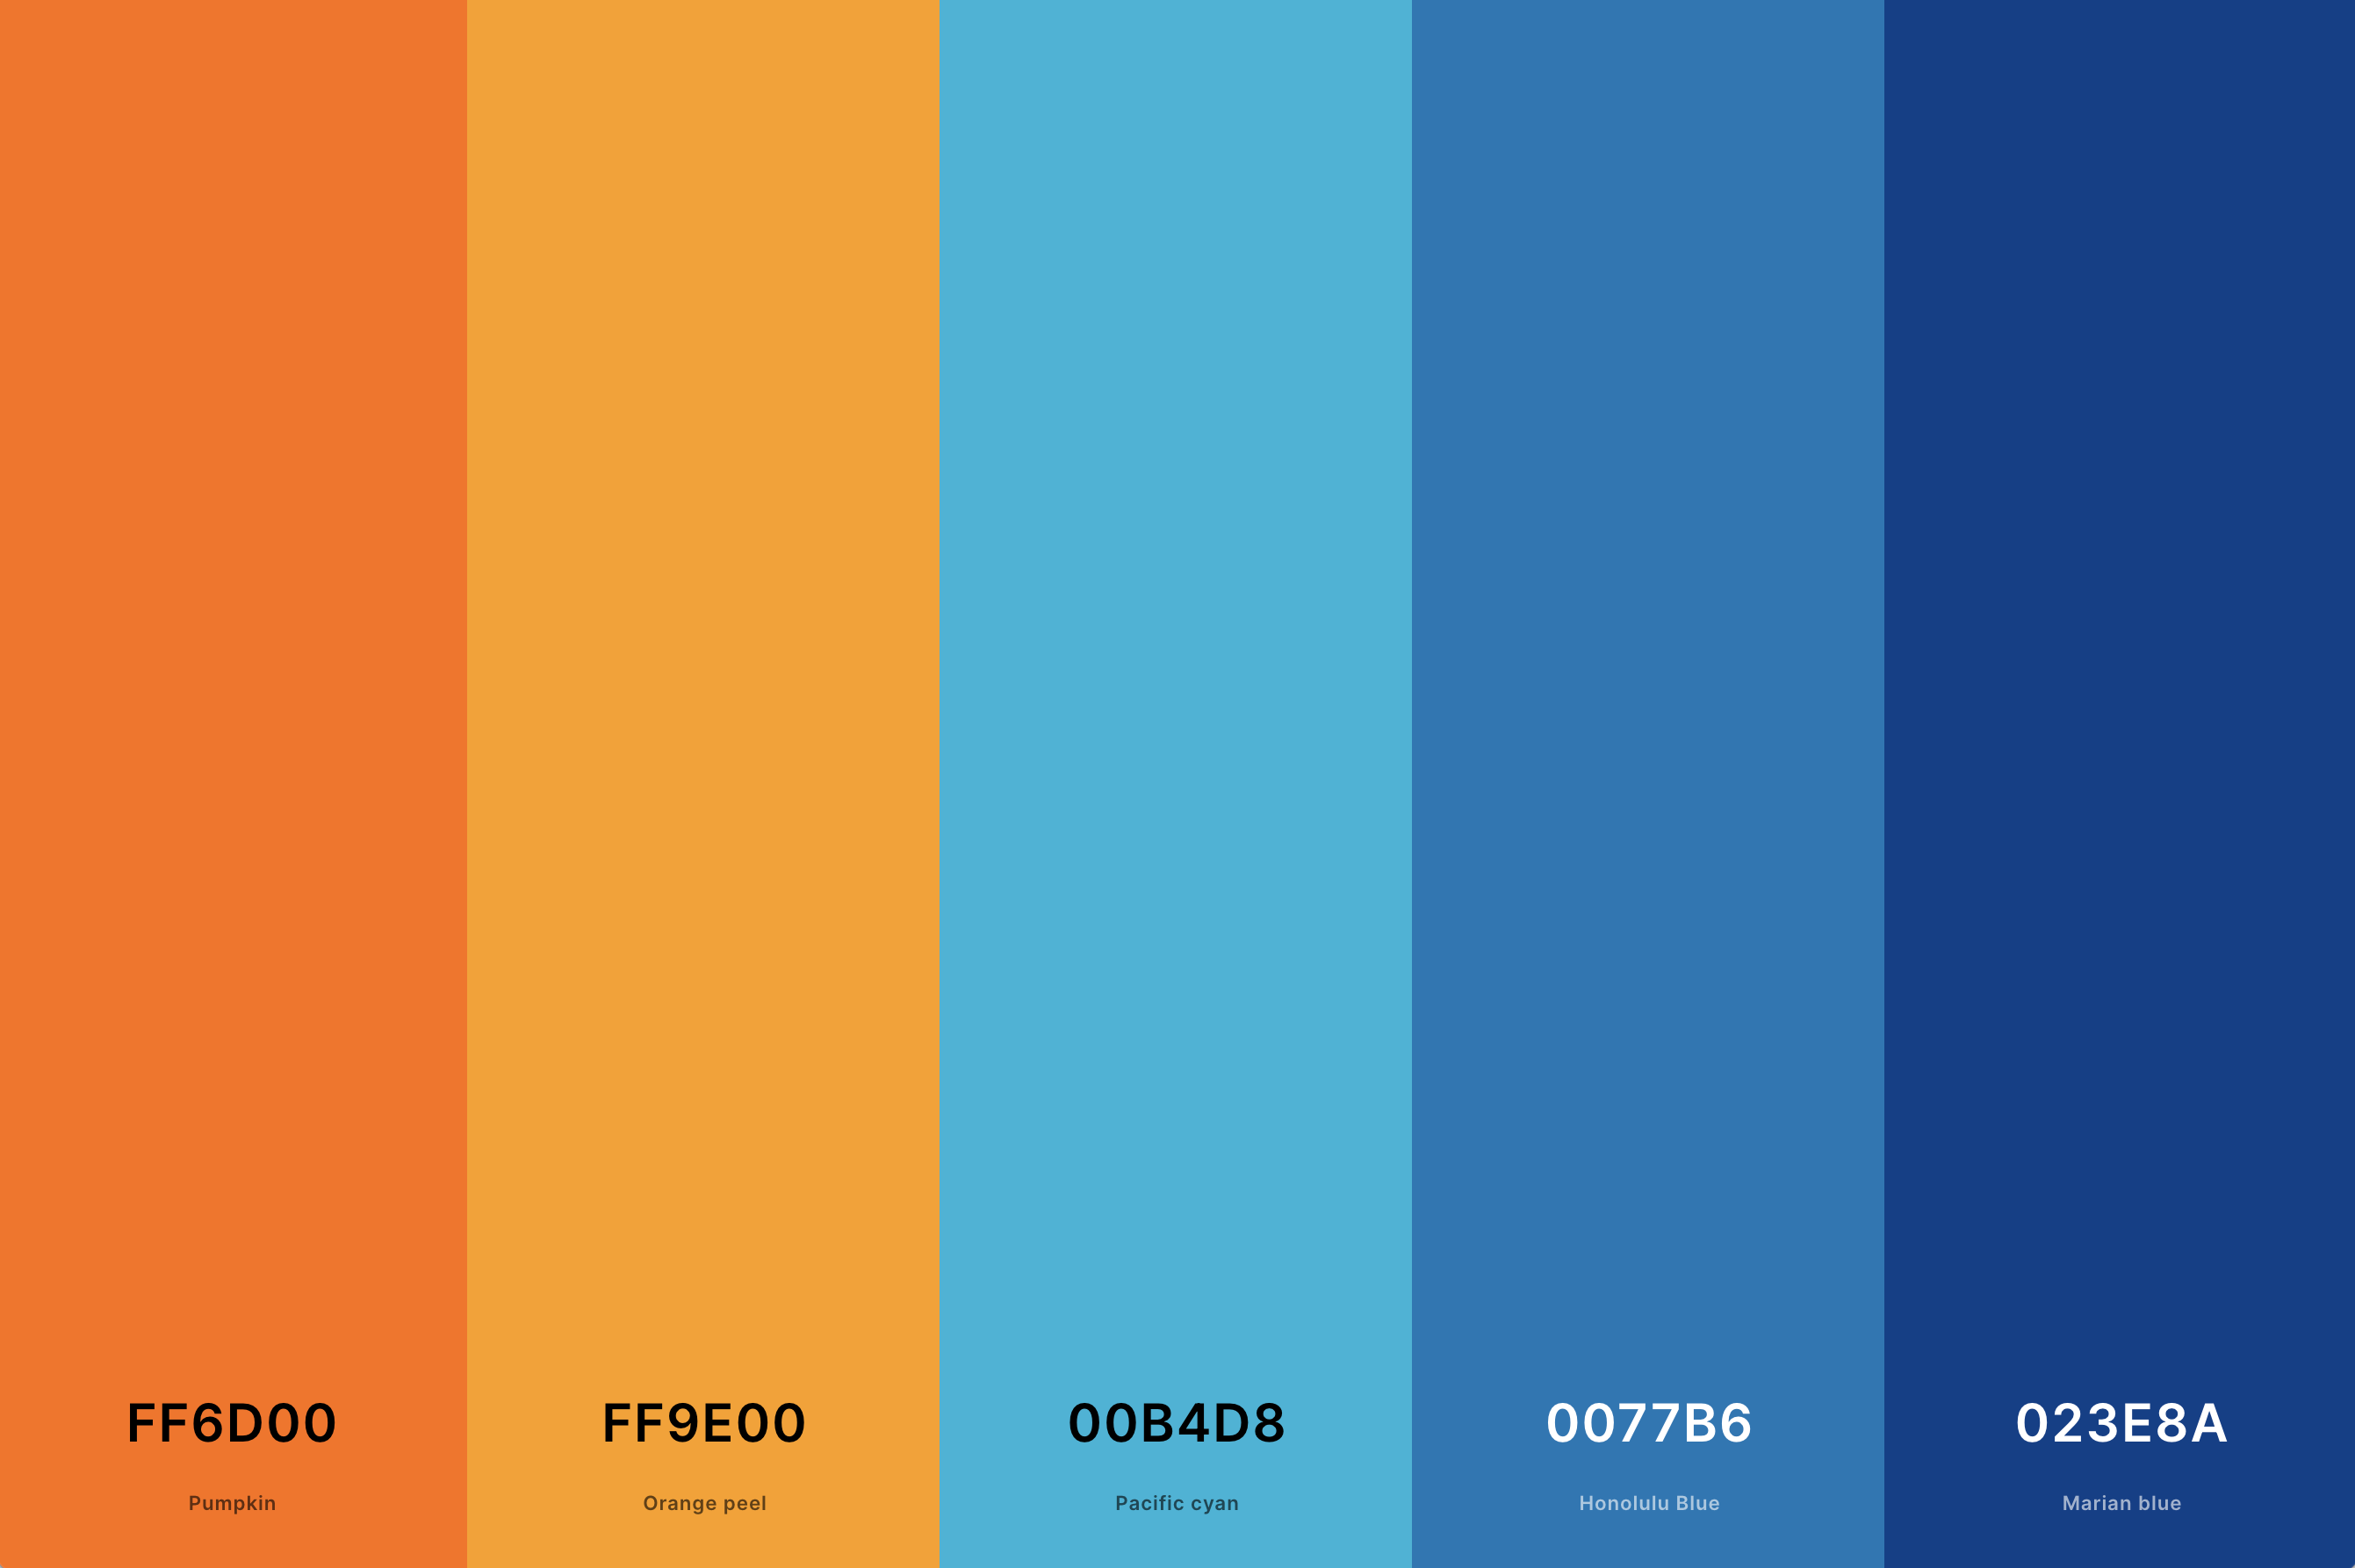 2. Orange And Blue Color Palette Color Palette with Pumpkin (Hex #FF6D00) + Orange Peel (Hex #FF9E00) + Pacific Cyan (Hex #00B4D8) + Honolulu Blue (Hex #0077B6) + Marian Blue (Hex #023E8A) Color Palette with Hex Codes